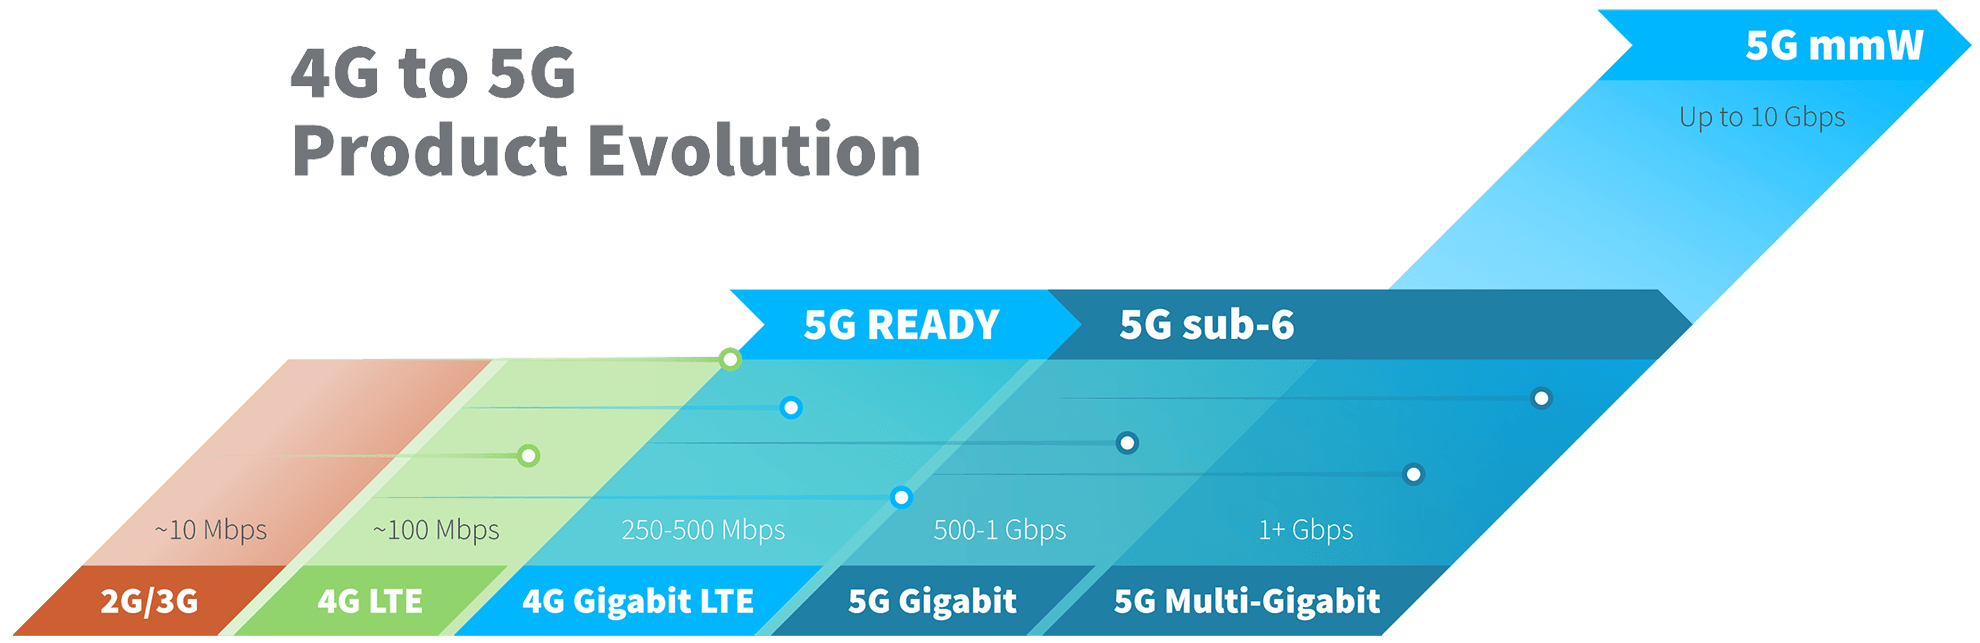 Evolución de los productos 4G a 5G